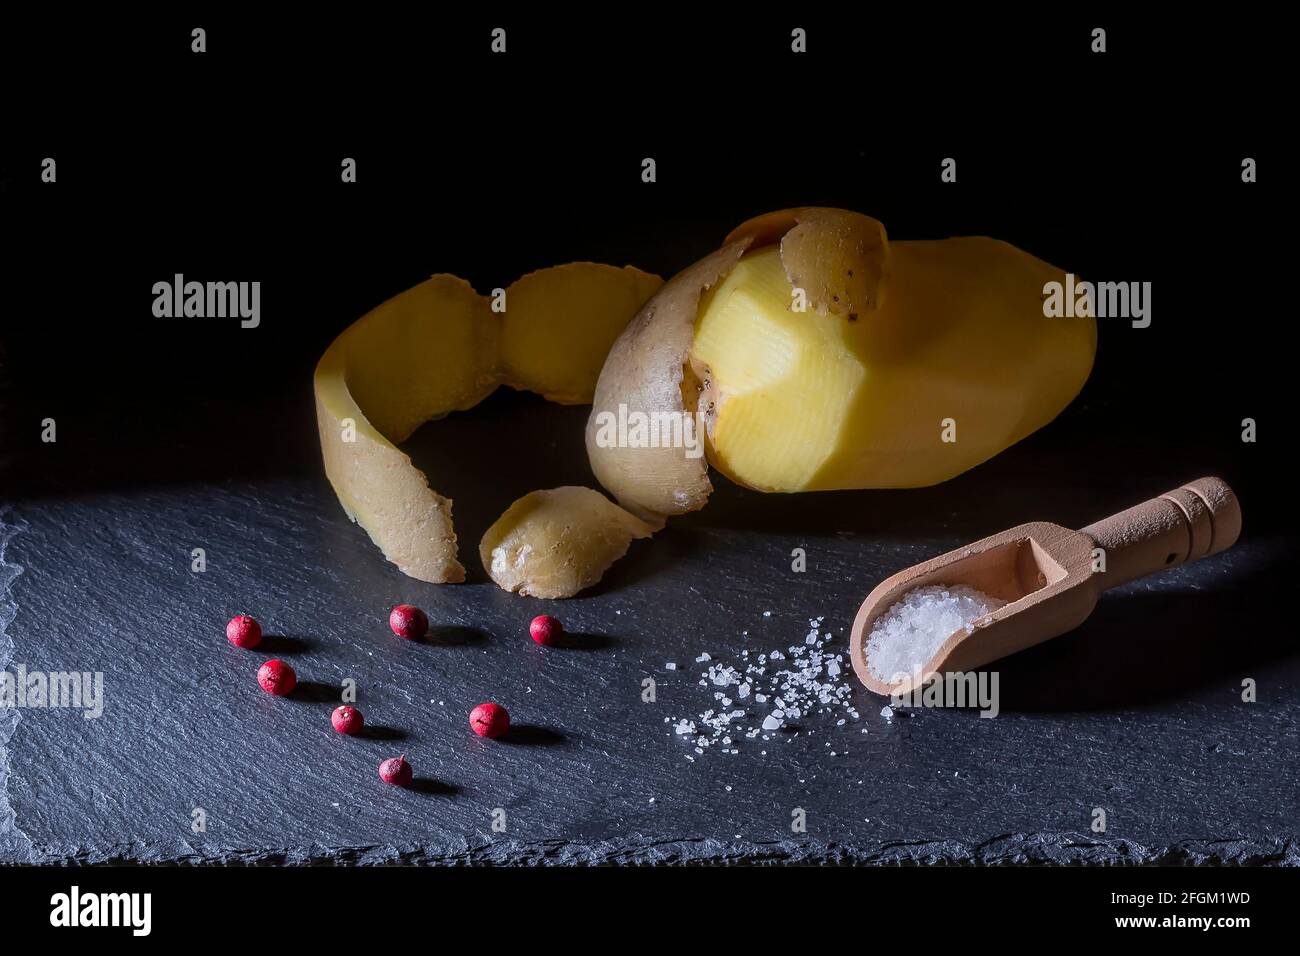 Une pomme de terre pelée avec la peau reposant sur le dessus, des baies rouges et une cuillère en bois pleine de grains de sel sur une plaque d'ardoise Banque D'Images